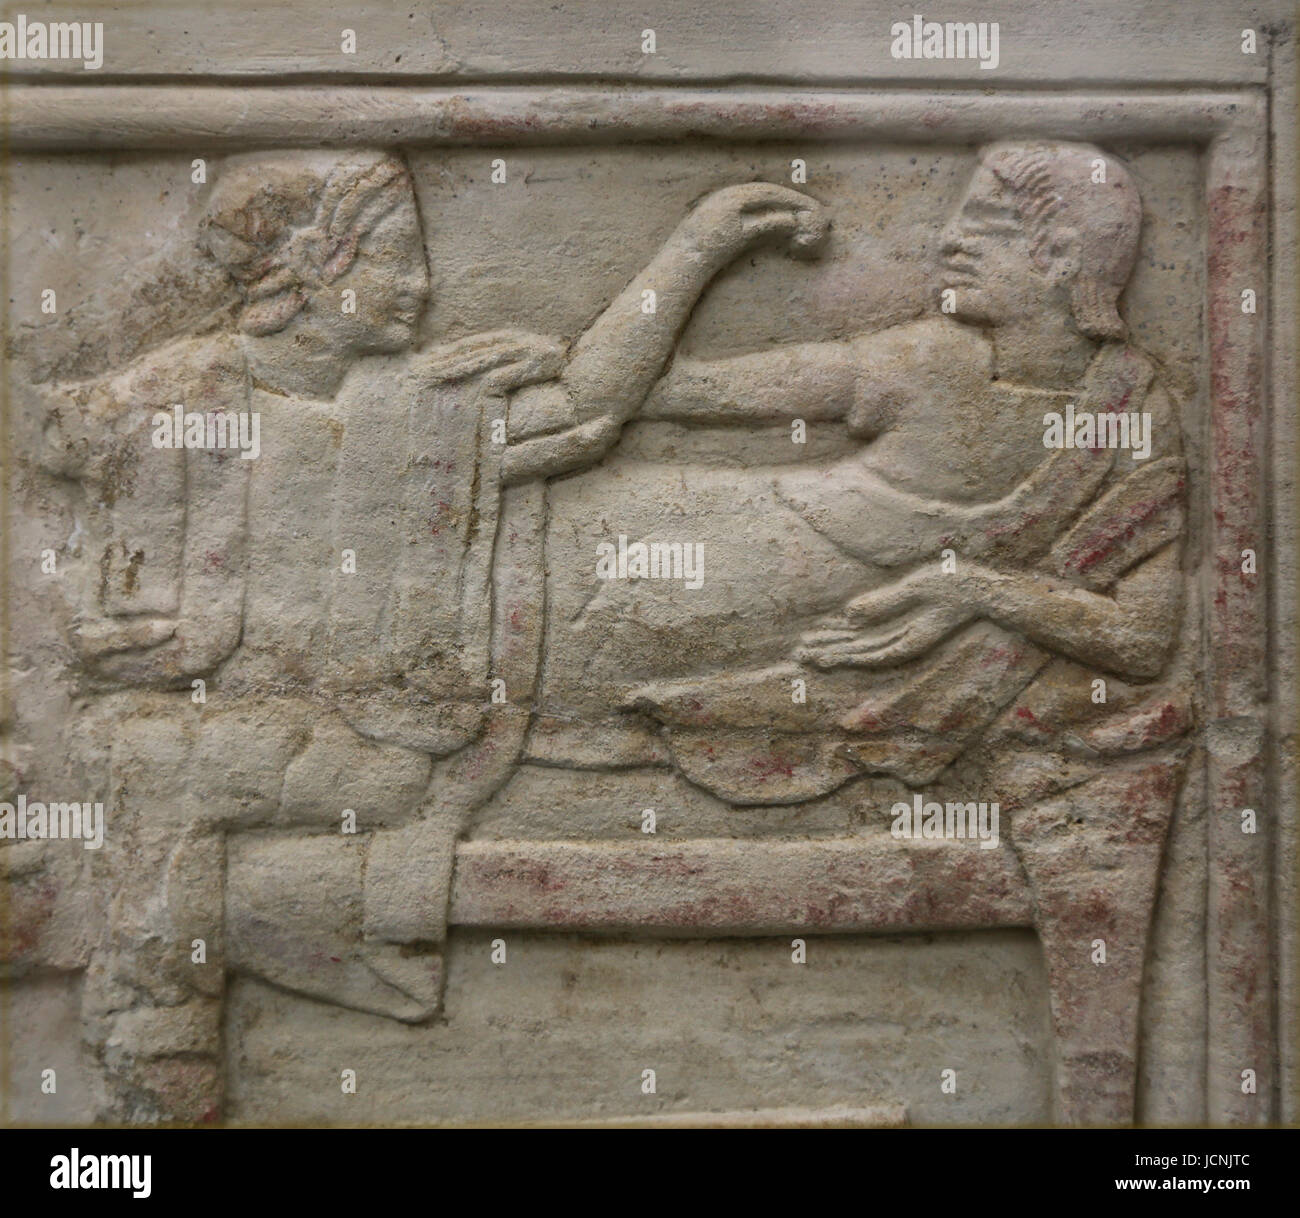 La terracotta urna cineraria. Scena di cinque guerrieri merlata. Etrusca, 150-130 A.C. Chiusi, Italia. British Museum. Londra. Regno Unito Foto Stock